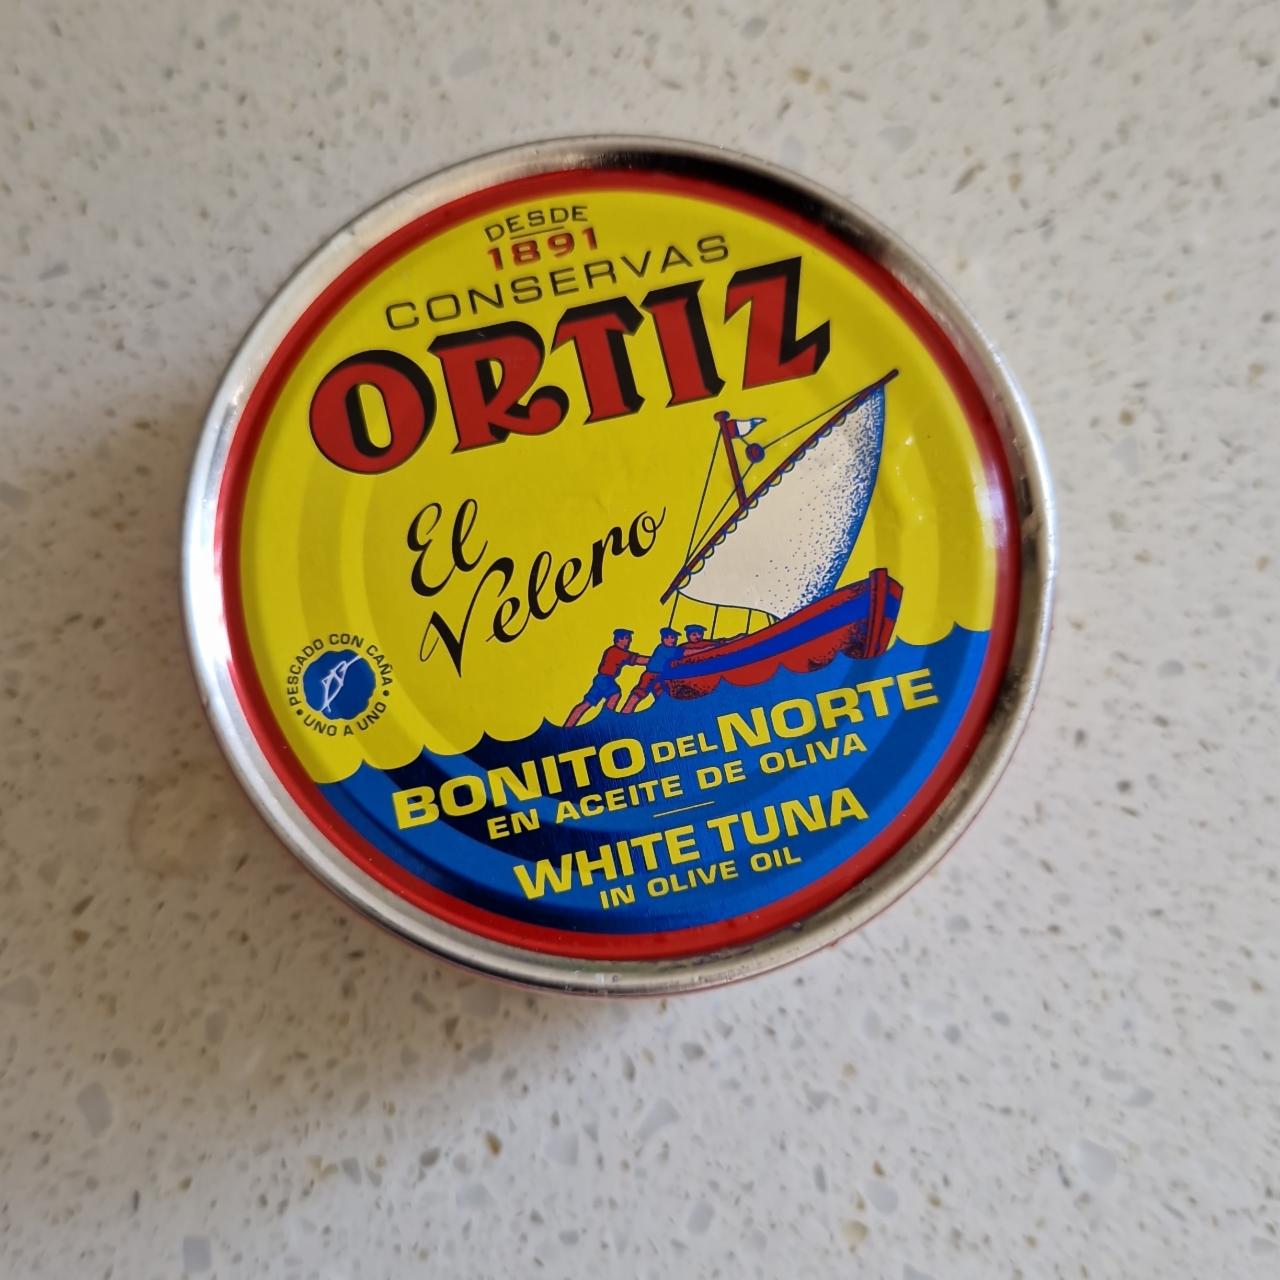 Fotografie - White Tuna in Olive Oil Ortiz